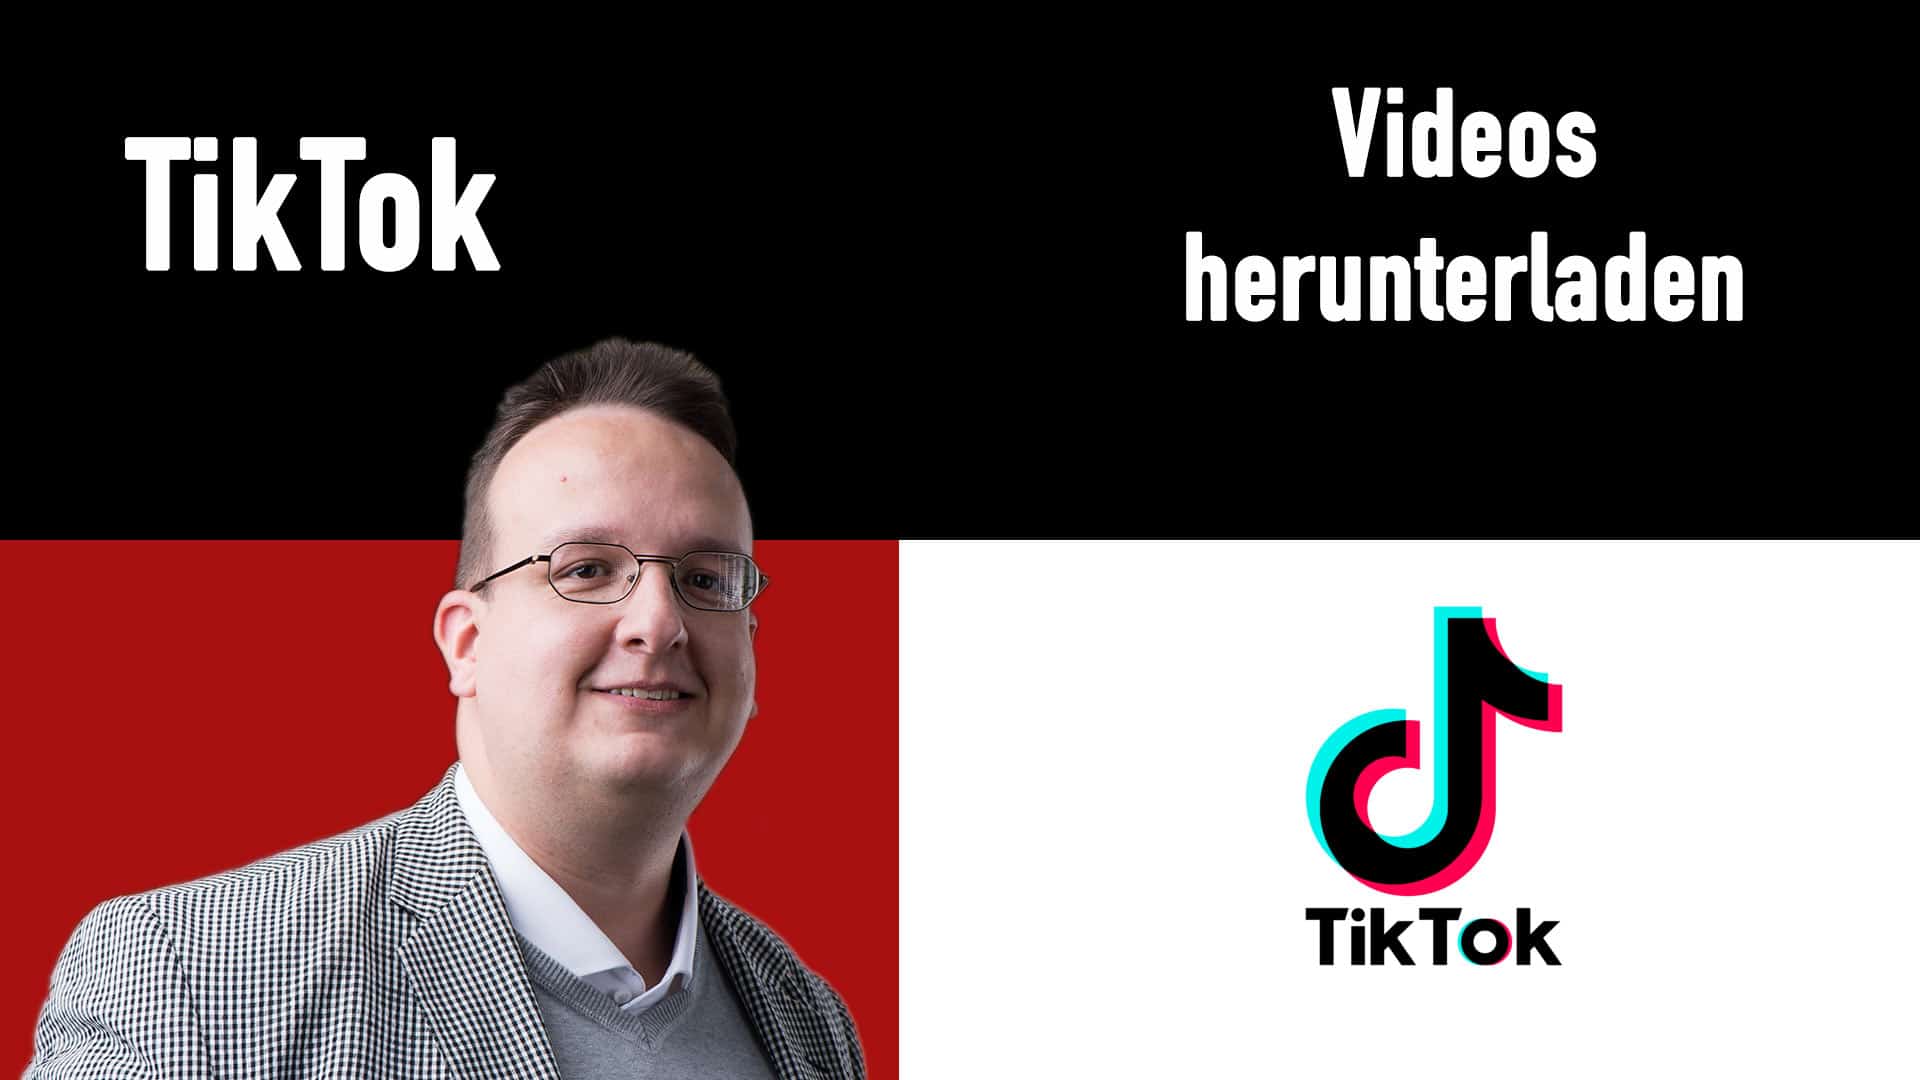 Tiktok Videos sauber herunterladen (Ohne Watermark / Wasserzeichen)